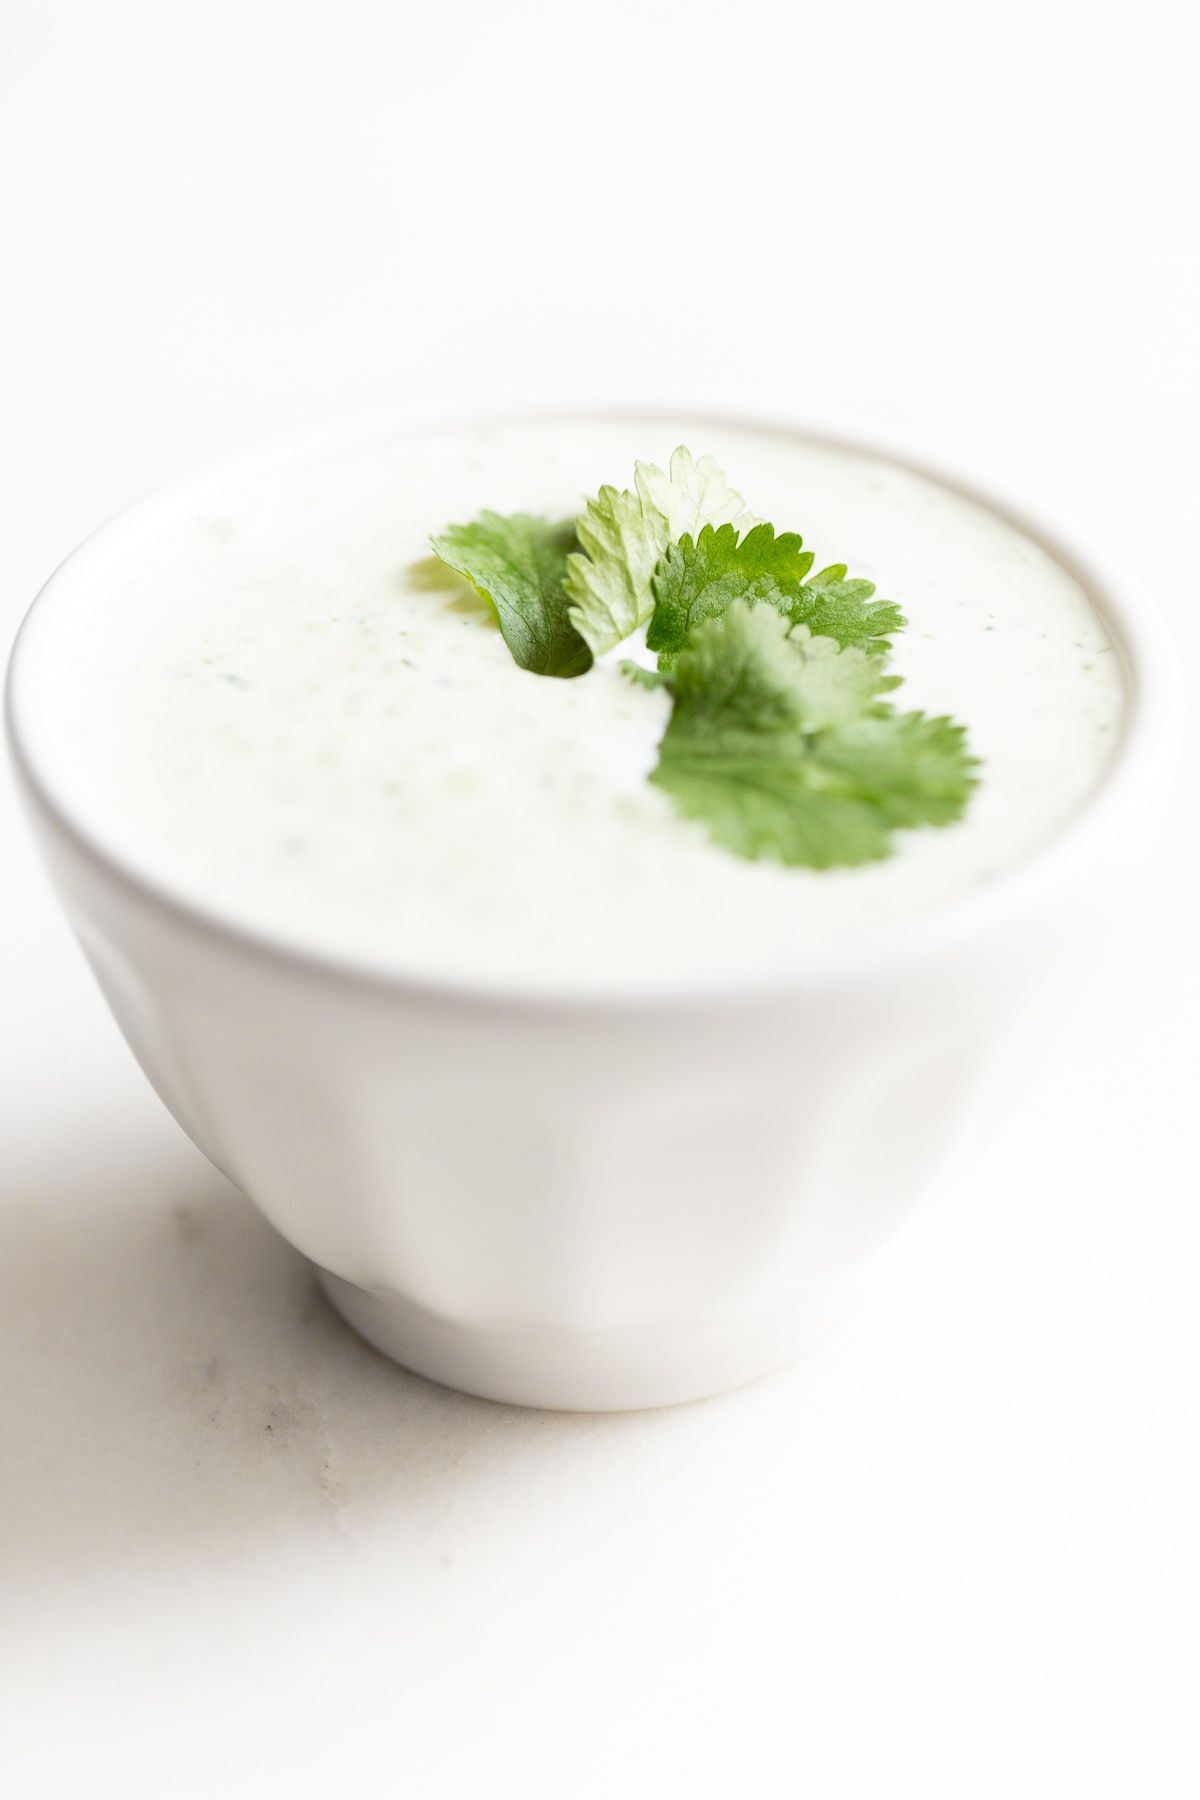 A white bowl of crema de cilantro on a white countertop, garnished with cilantro.